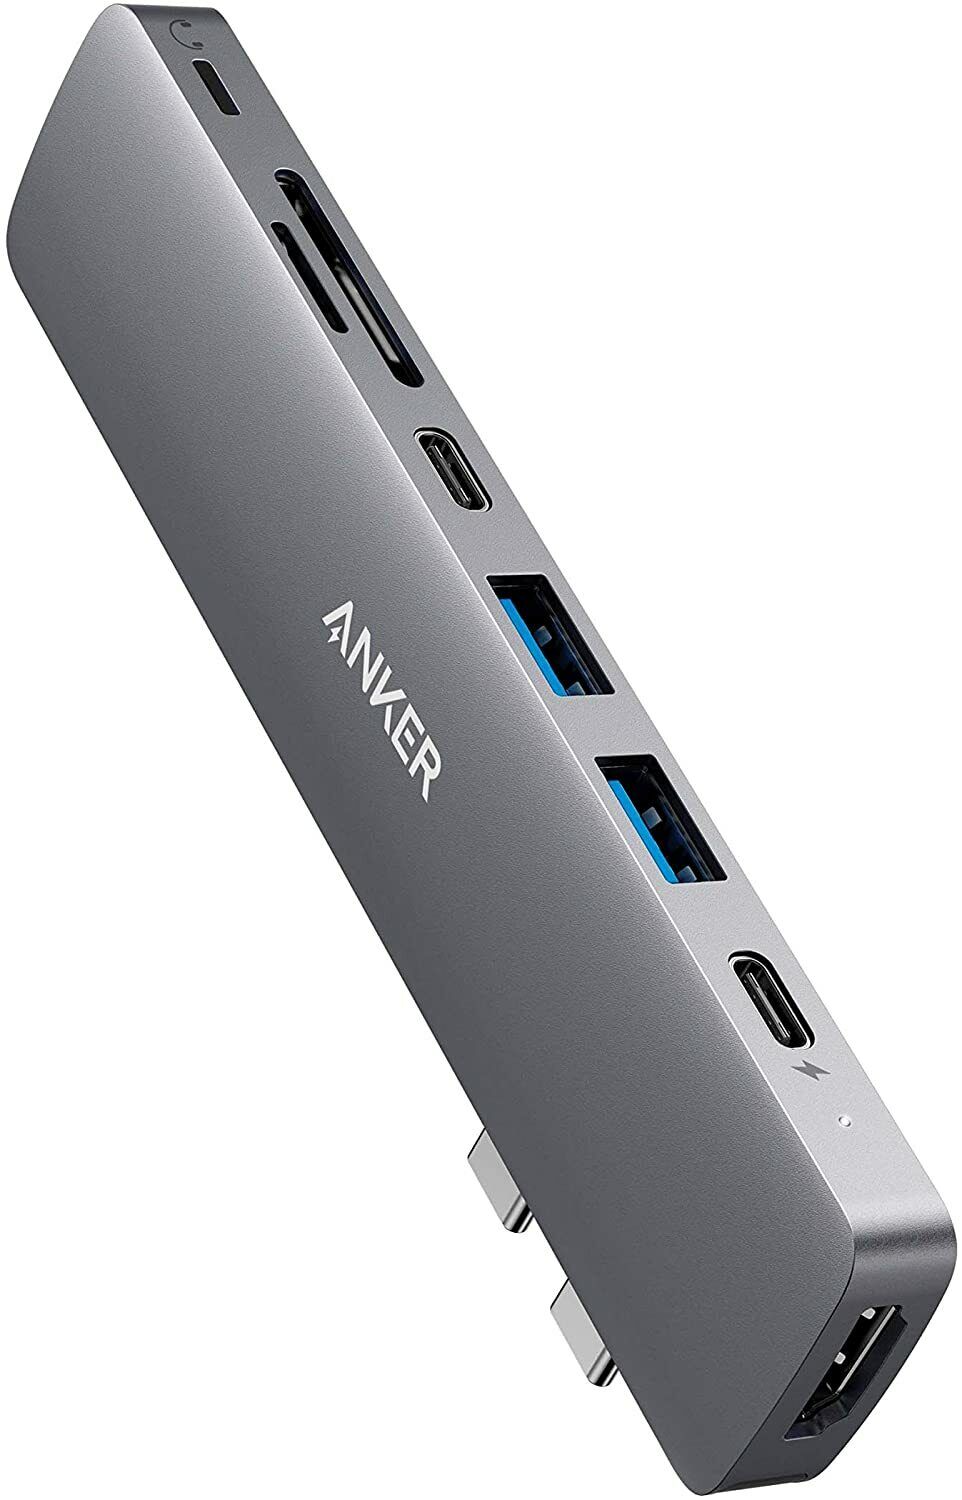 Anker 8-in-2 USB C Hub Adapter Splitter Thunderbolt 3 Port 4K HDMI for MacBook